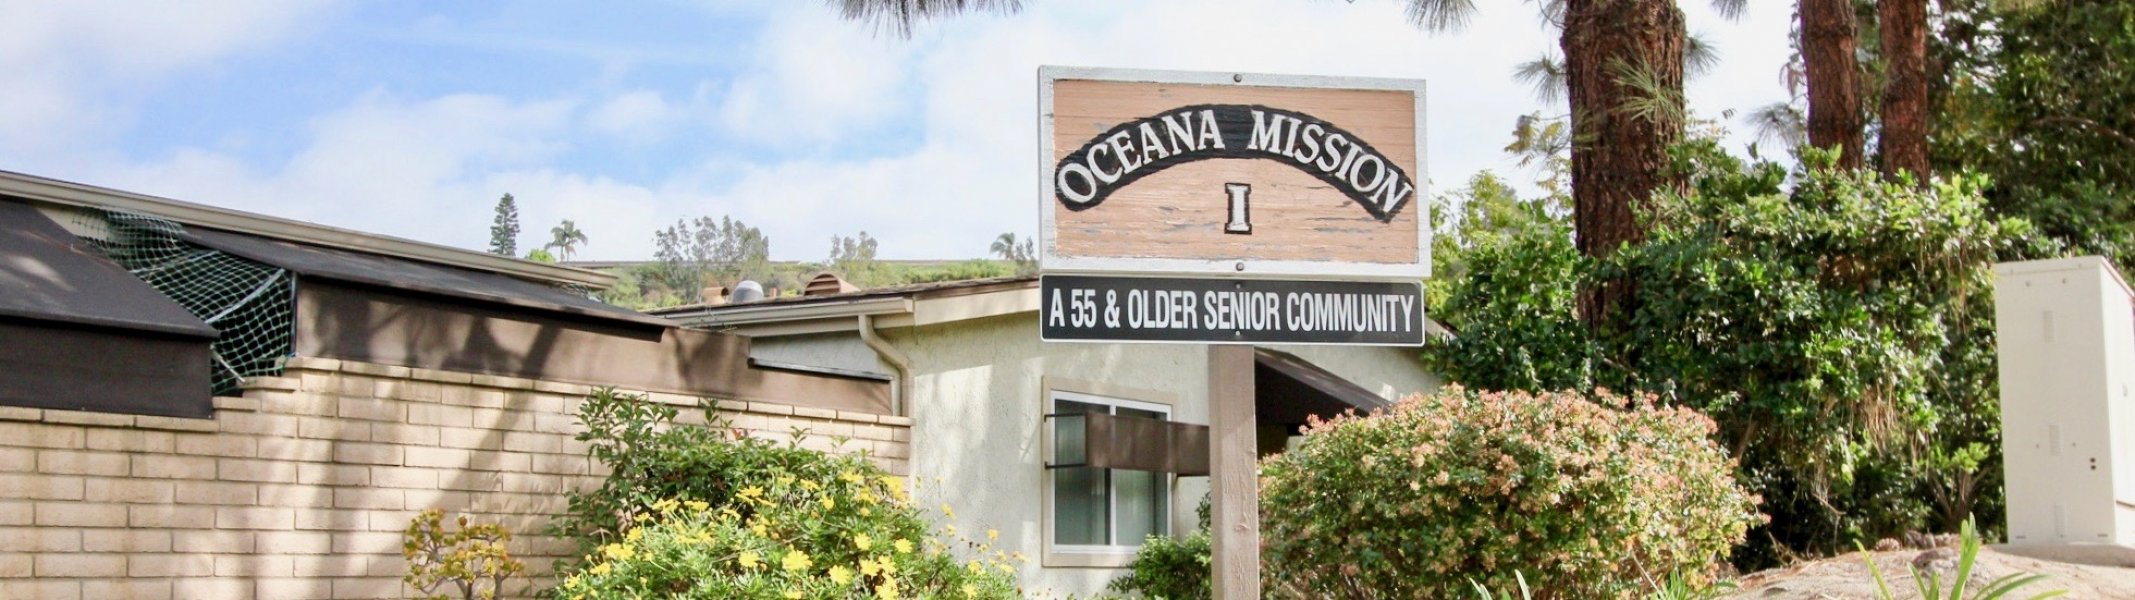 Oceana Mission